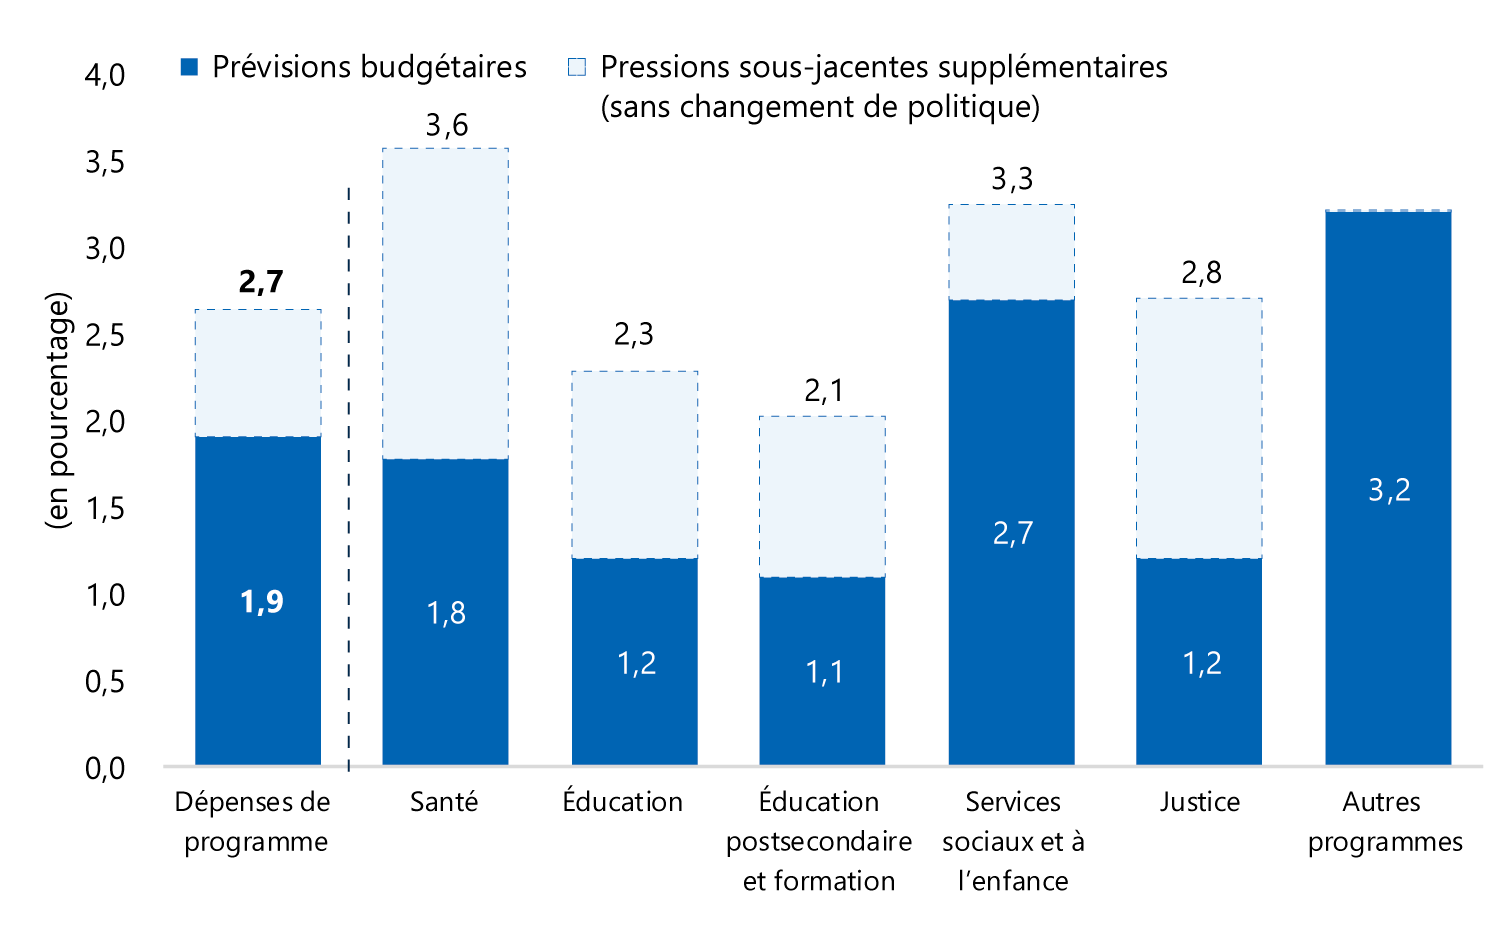 Croissance des dépenses de programmes et des pressions sous-jacentes, de 2014-2015 à 2018-2019